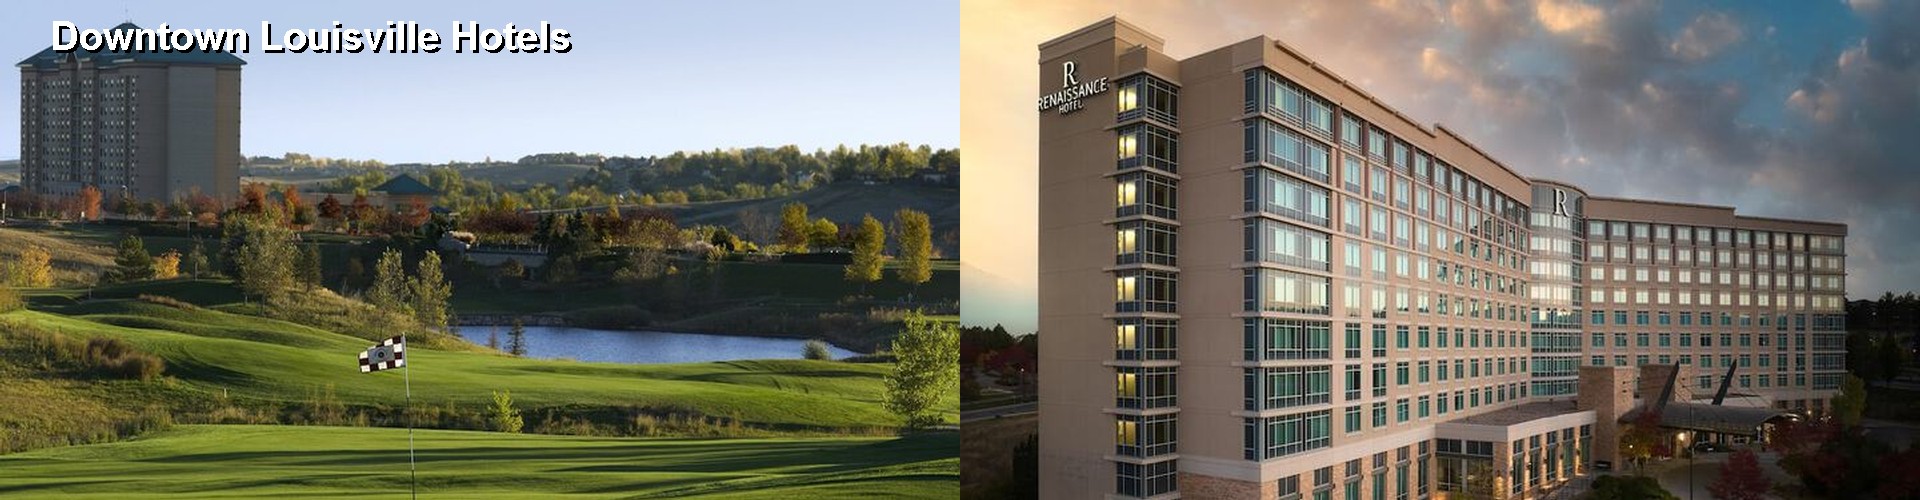 5 Best Hotels near Downtown Louisville